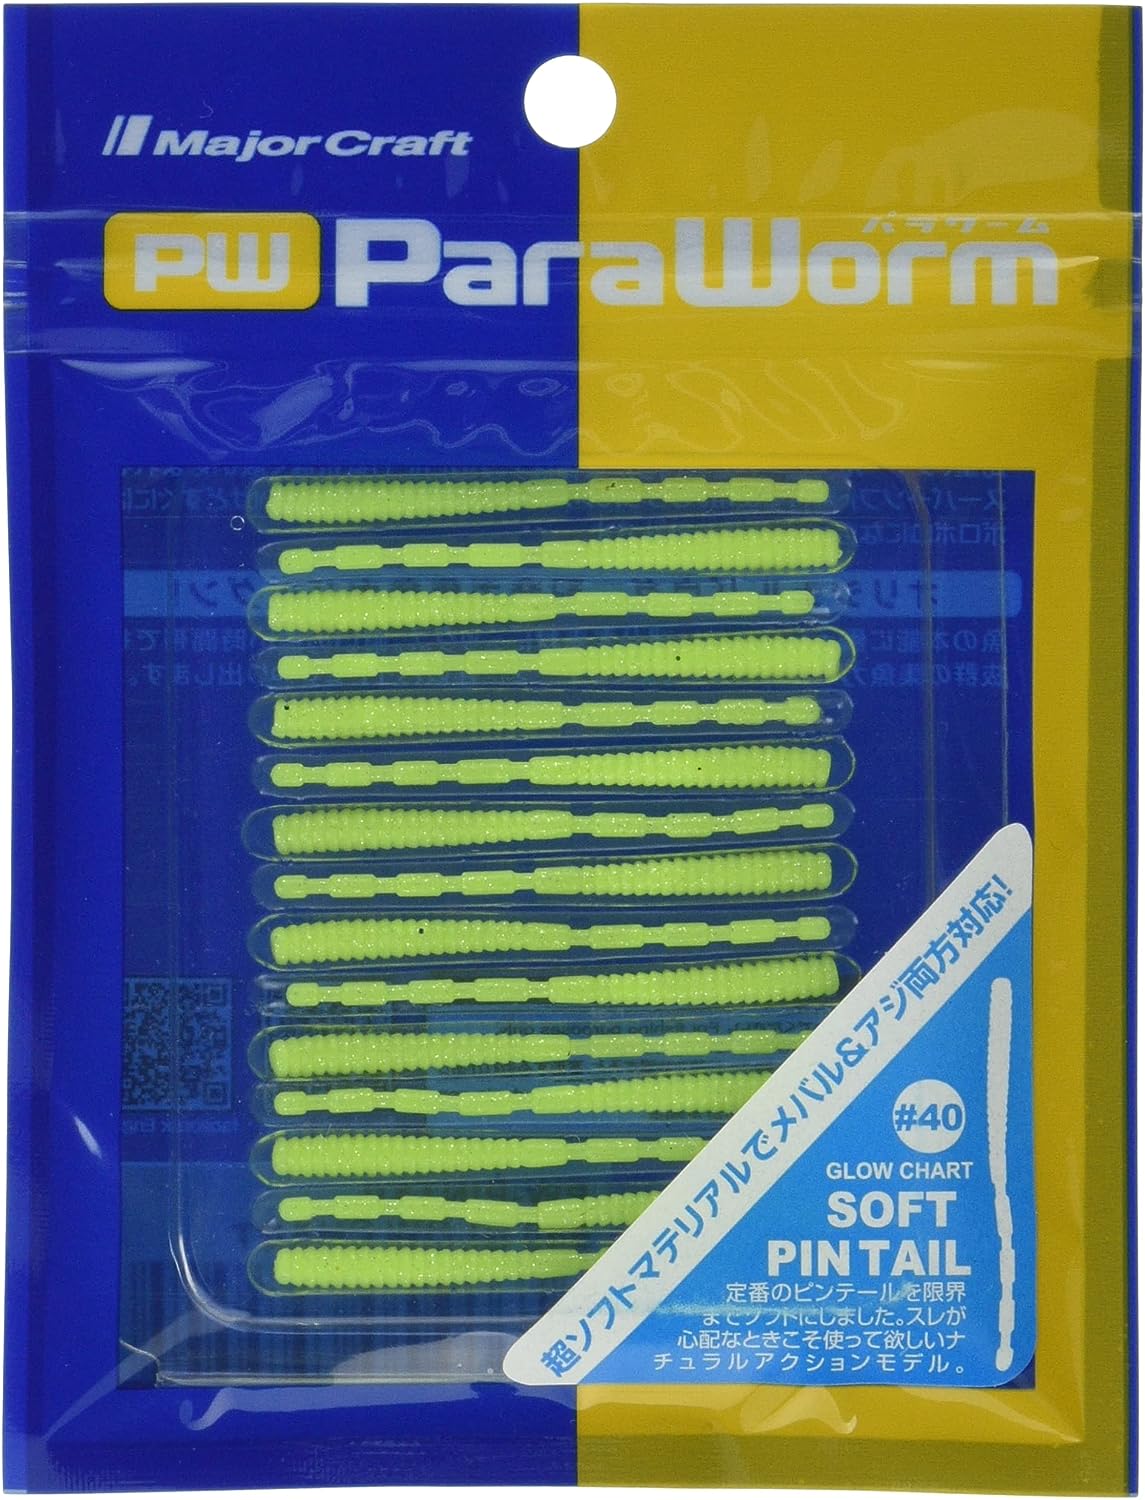 Artigianato maggiore, Major Craft Paraworm Soft Pintail Lures